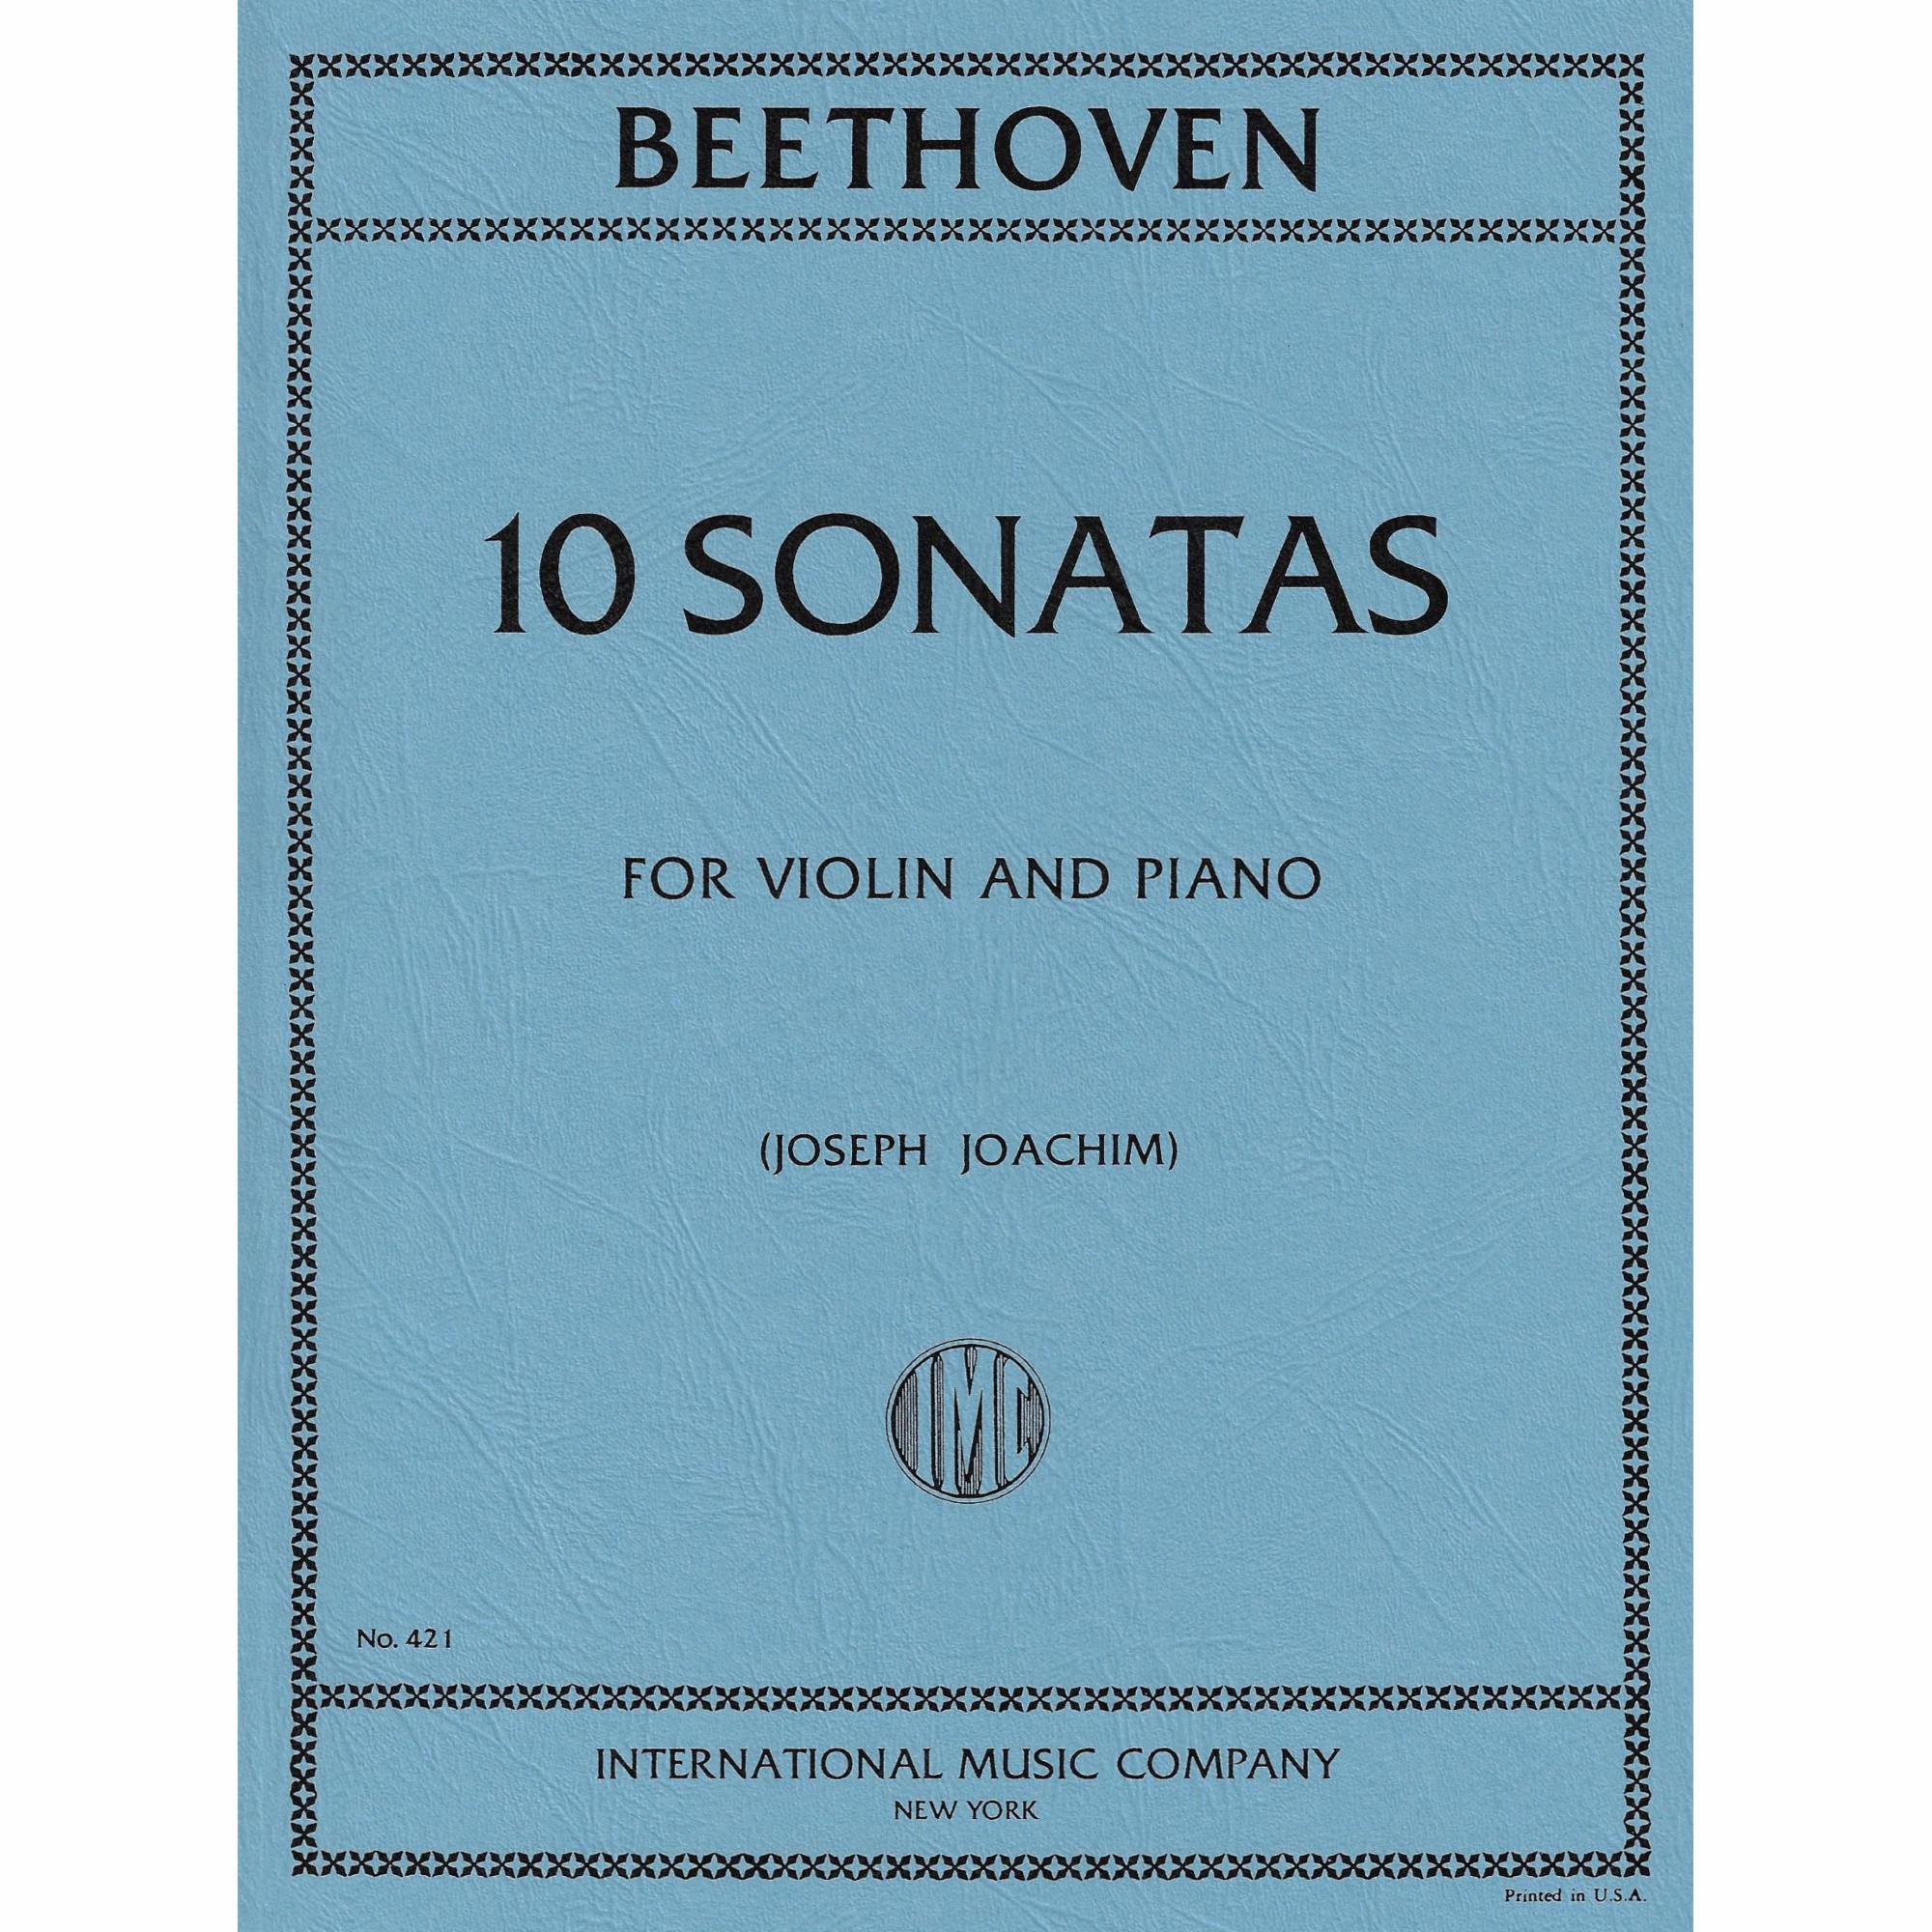 Beethoven -- 10 Sonatas for Violin and Piano